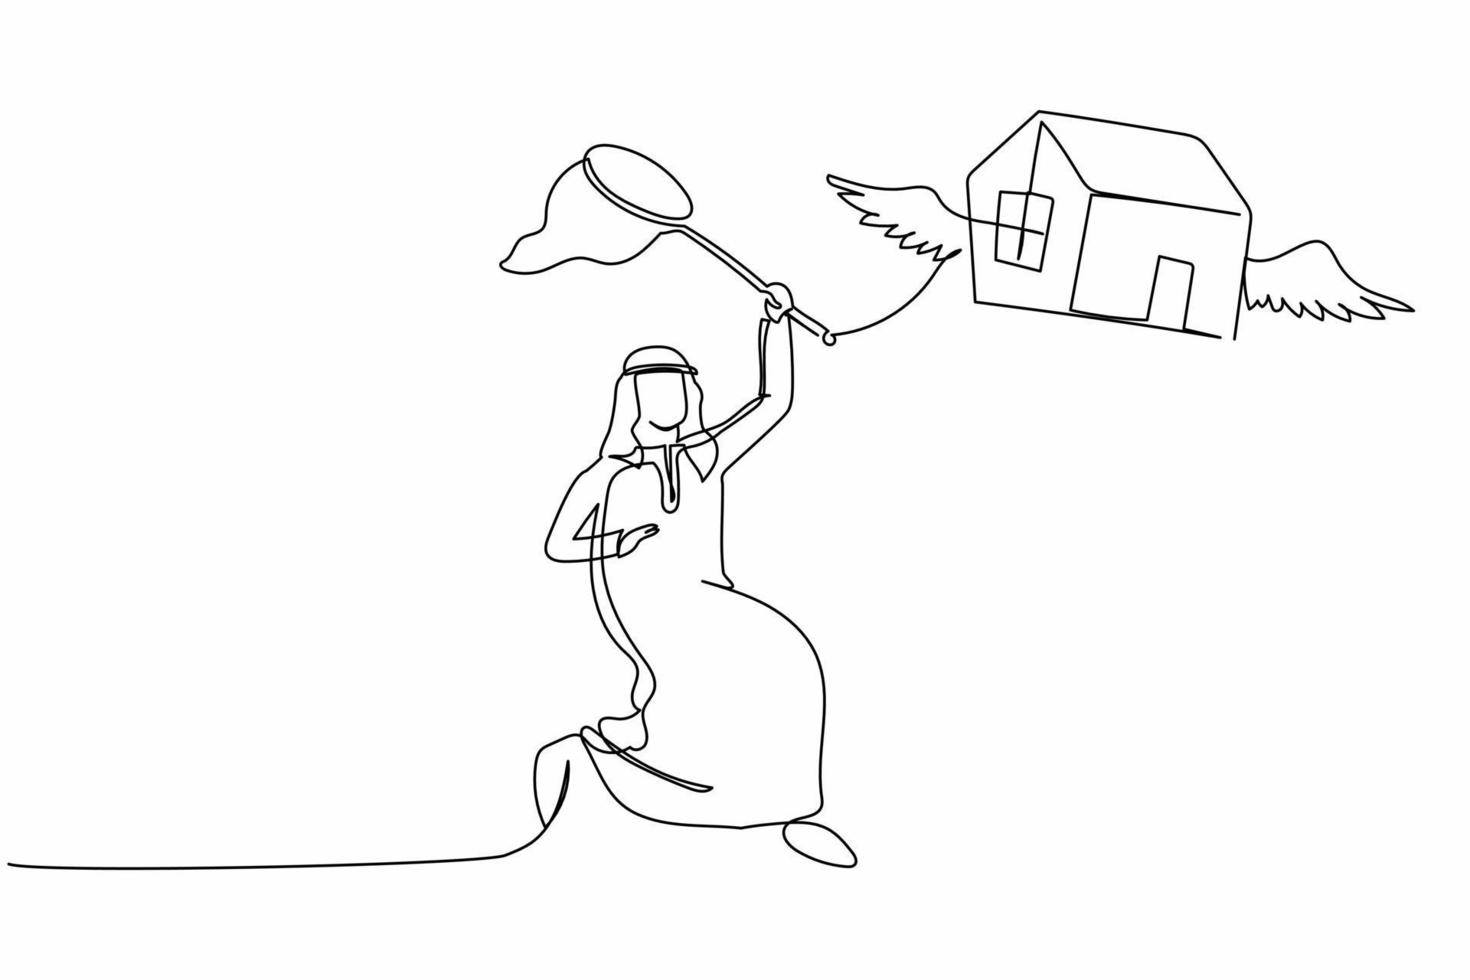 un seul dessin au trait un homme d'affaires arabe essaie d'attraper une maison volante avec un filet à papillons. les prix de l'immobilier s'envolent chaque année. métaphore commerciale. illustration vectorielle graphique de conception de dessin en ligne continue vecteur